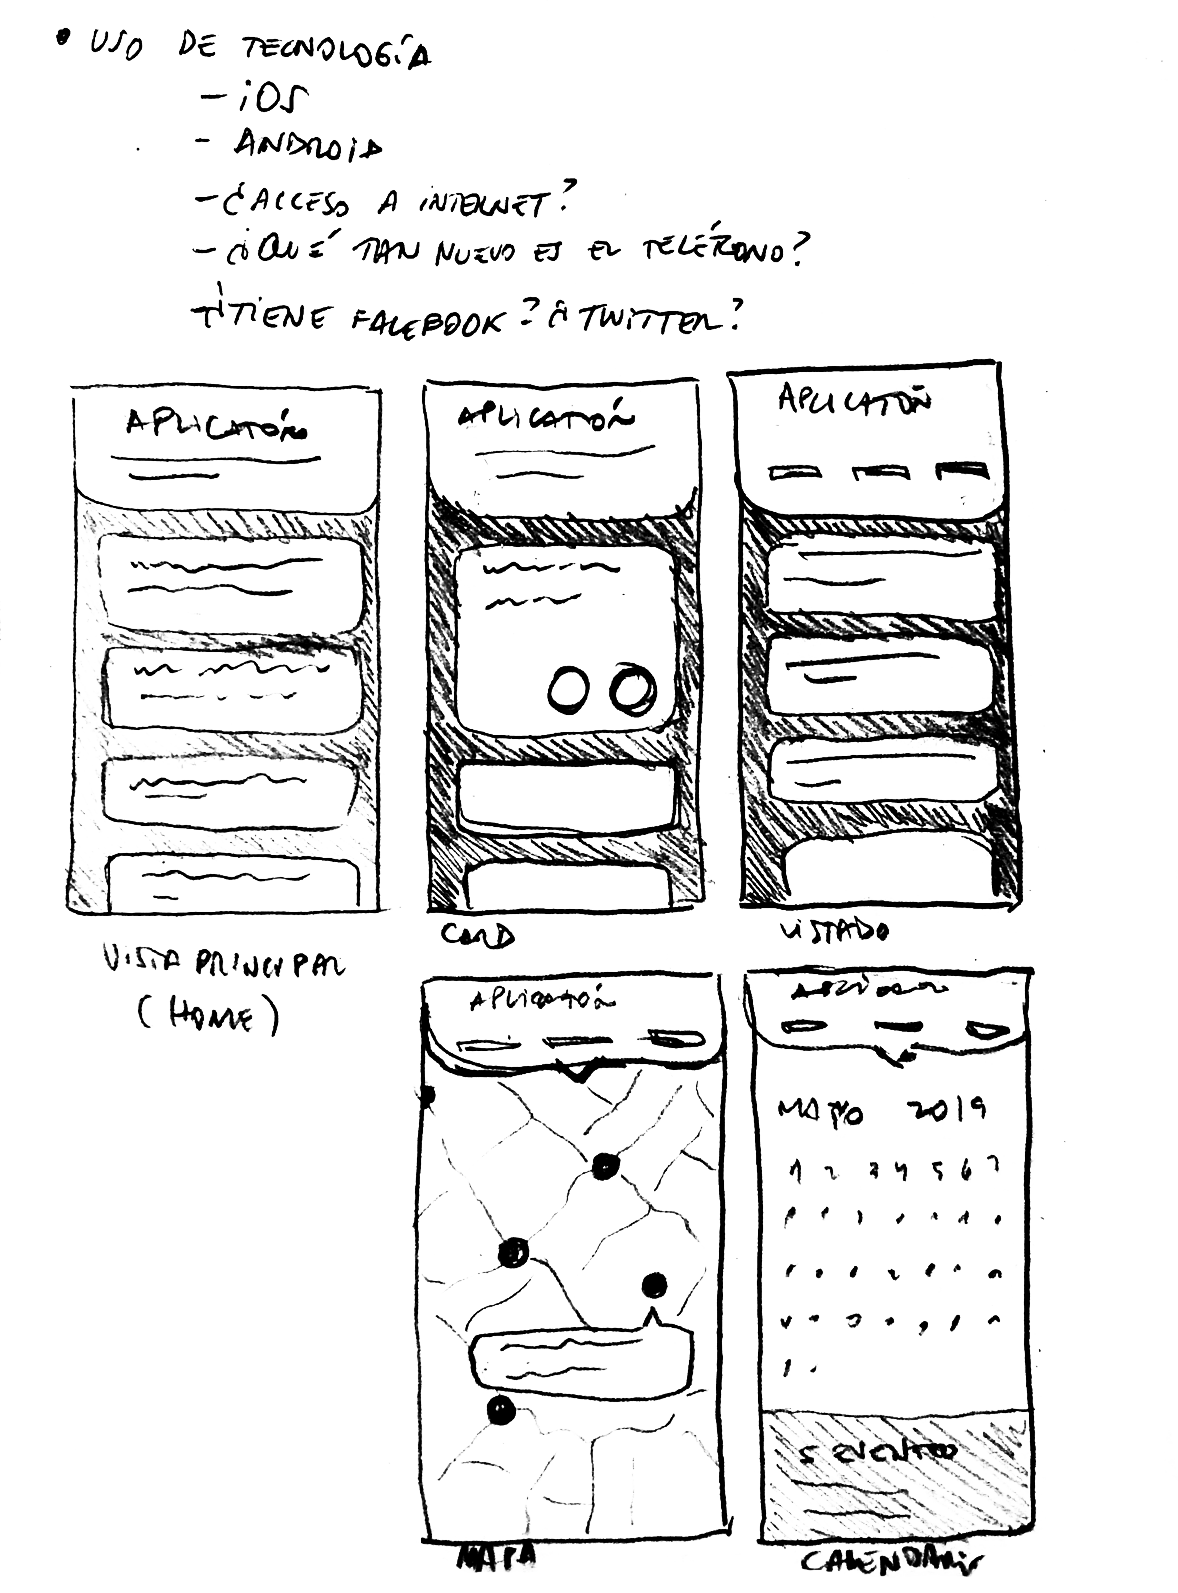 Boceto de una aplicación móvil en blanco y negro.